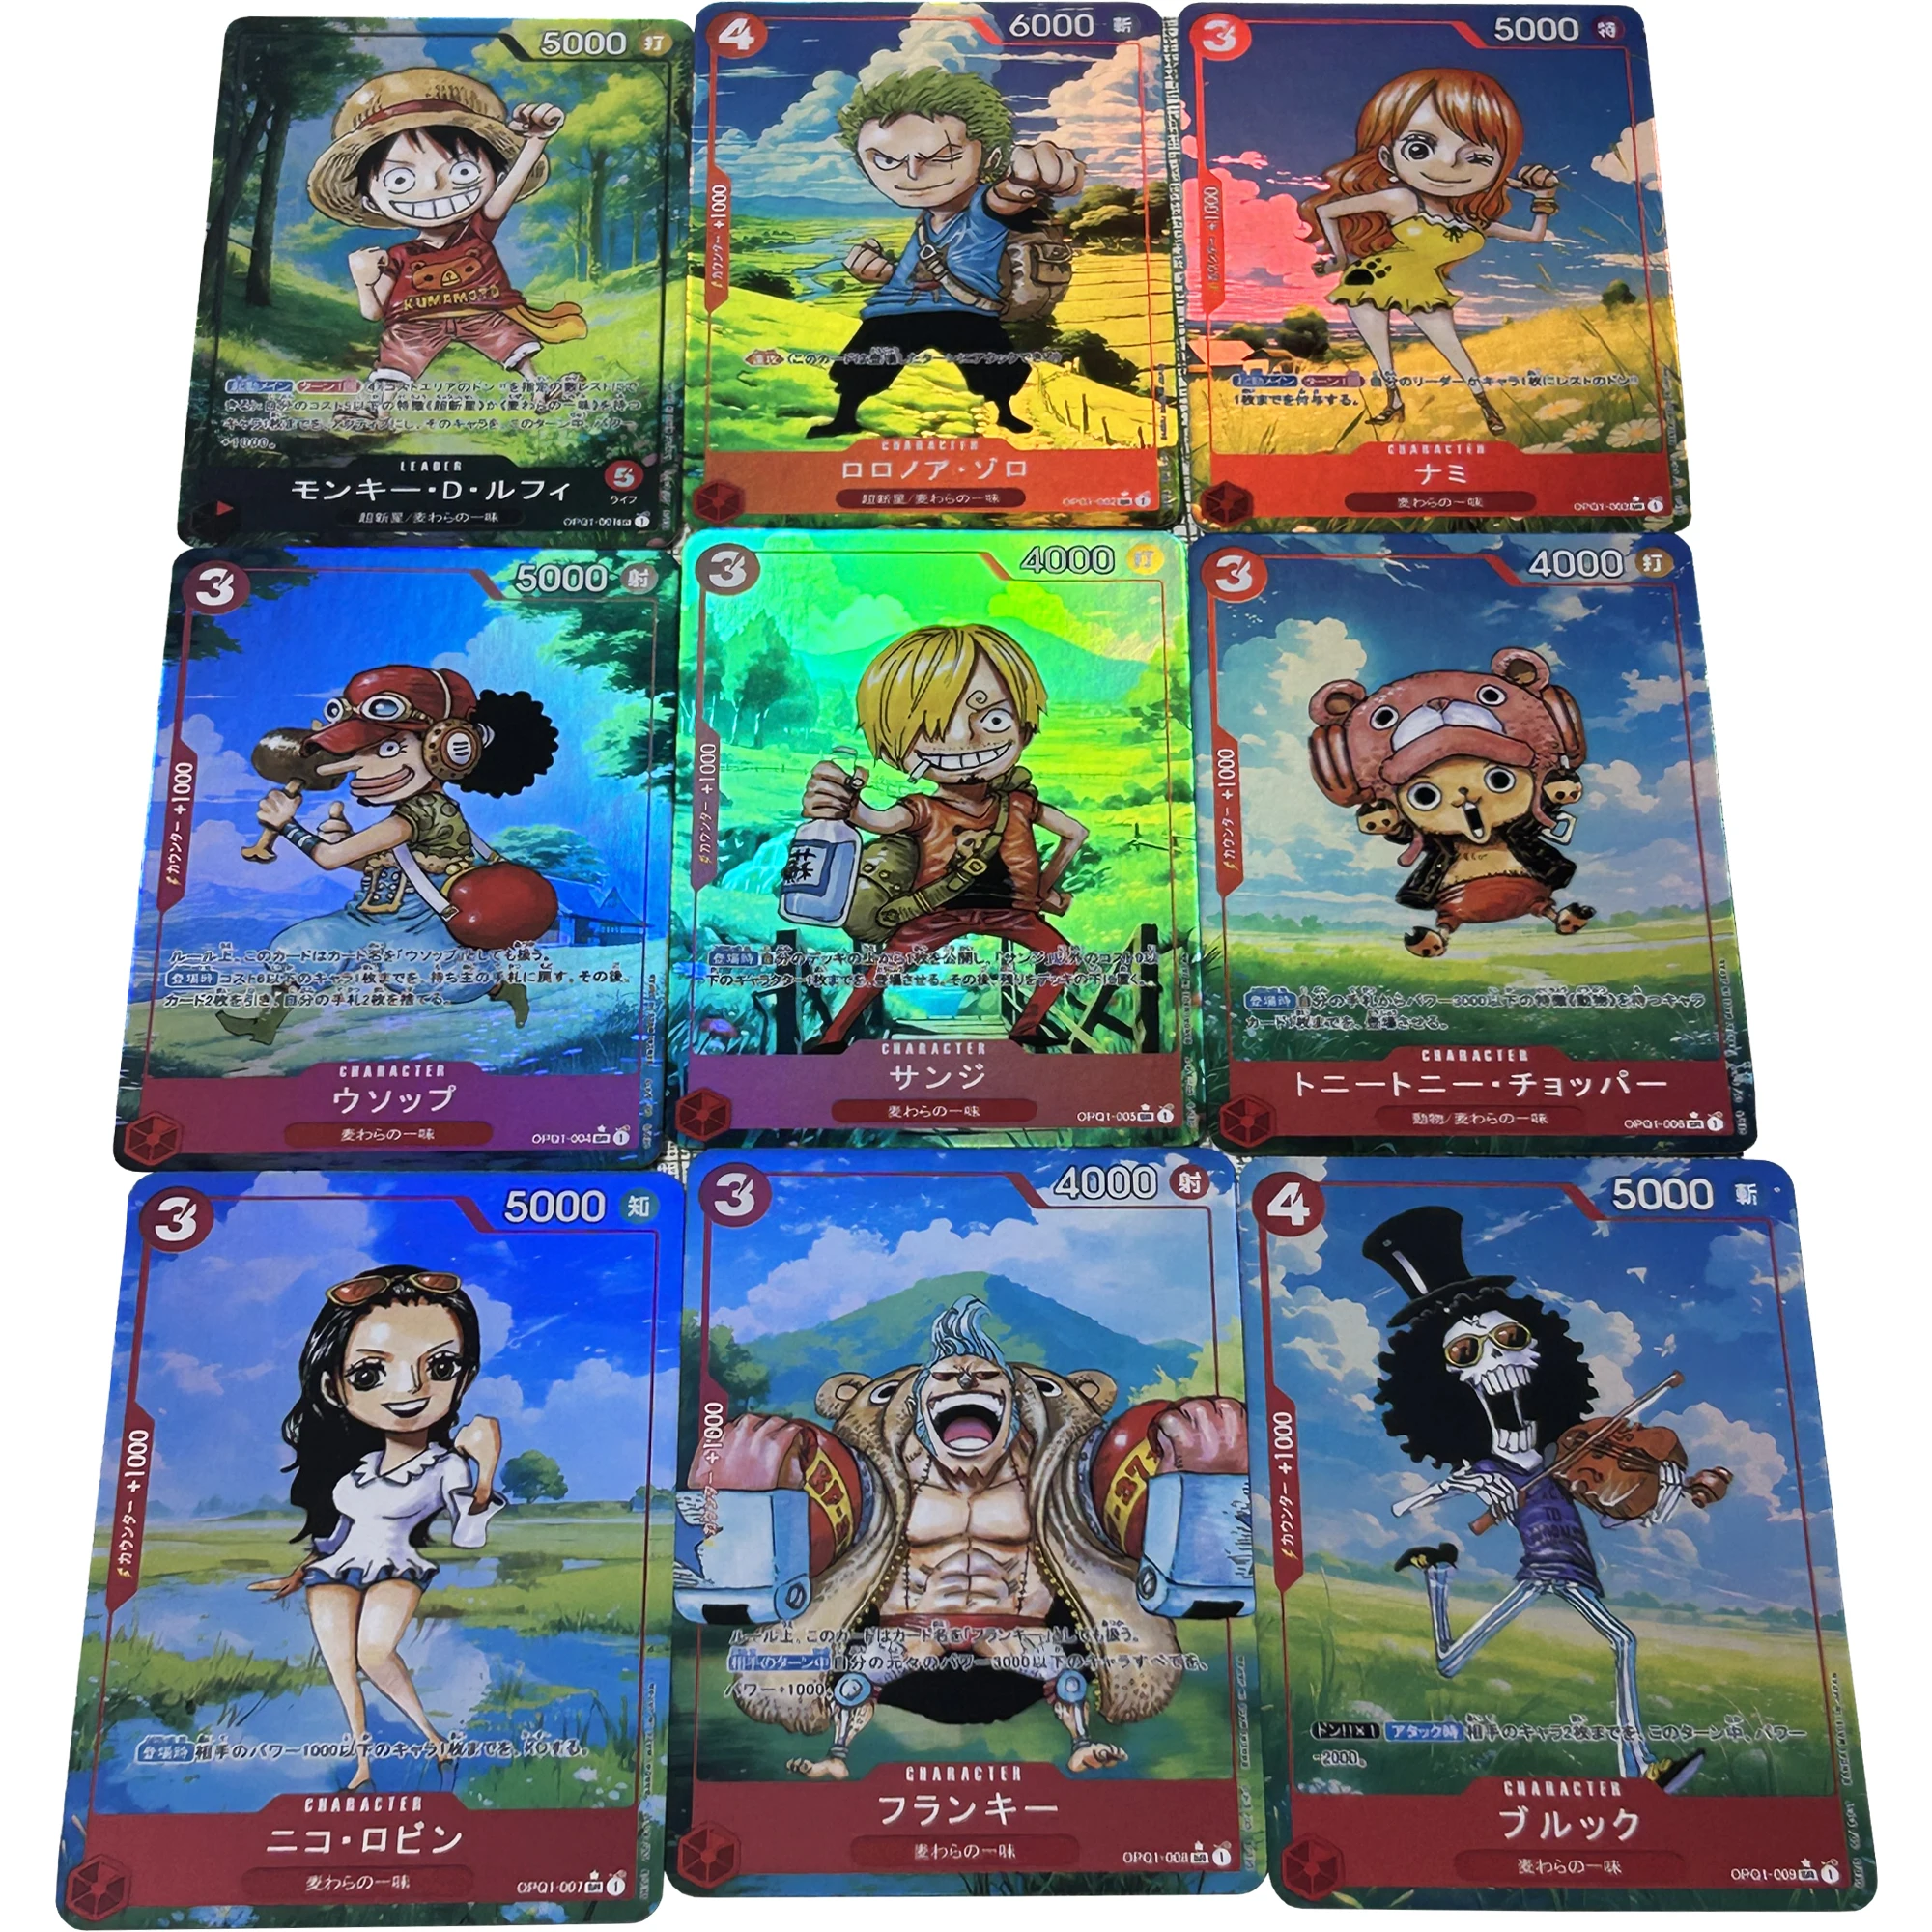 

9 шт./компл. OPCG One Piece Nami Luffy Zoro весенний стиль цветная флеш-карта Классическая игра Аниме Коллекция открыток Diy подарок игрушка